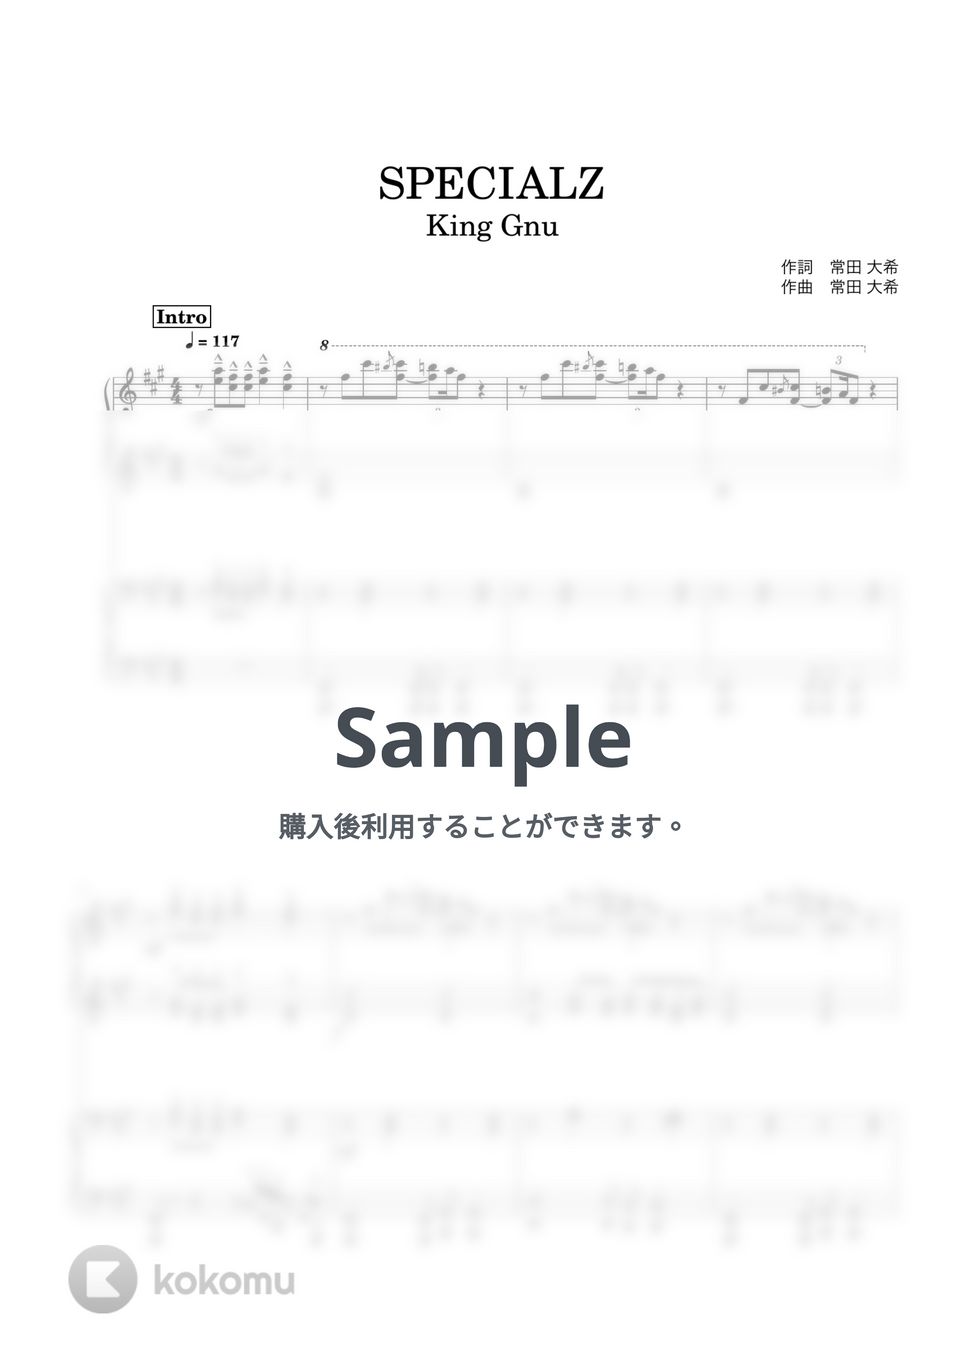 King Gnu - SPECIALZ (ピアノ連弾) by あーちゅーぶ